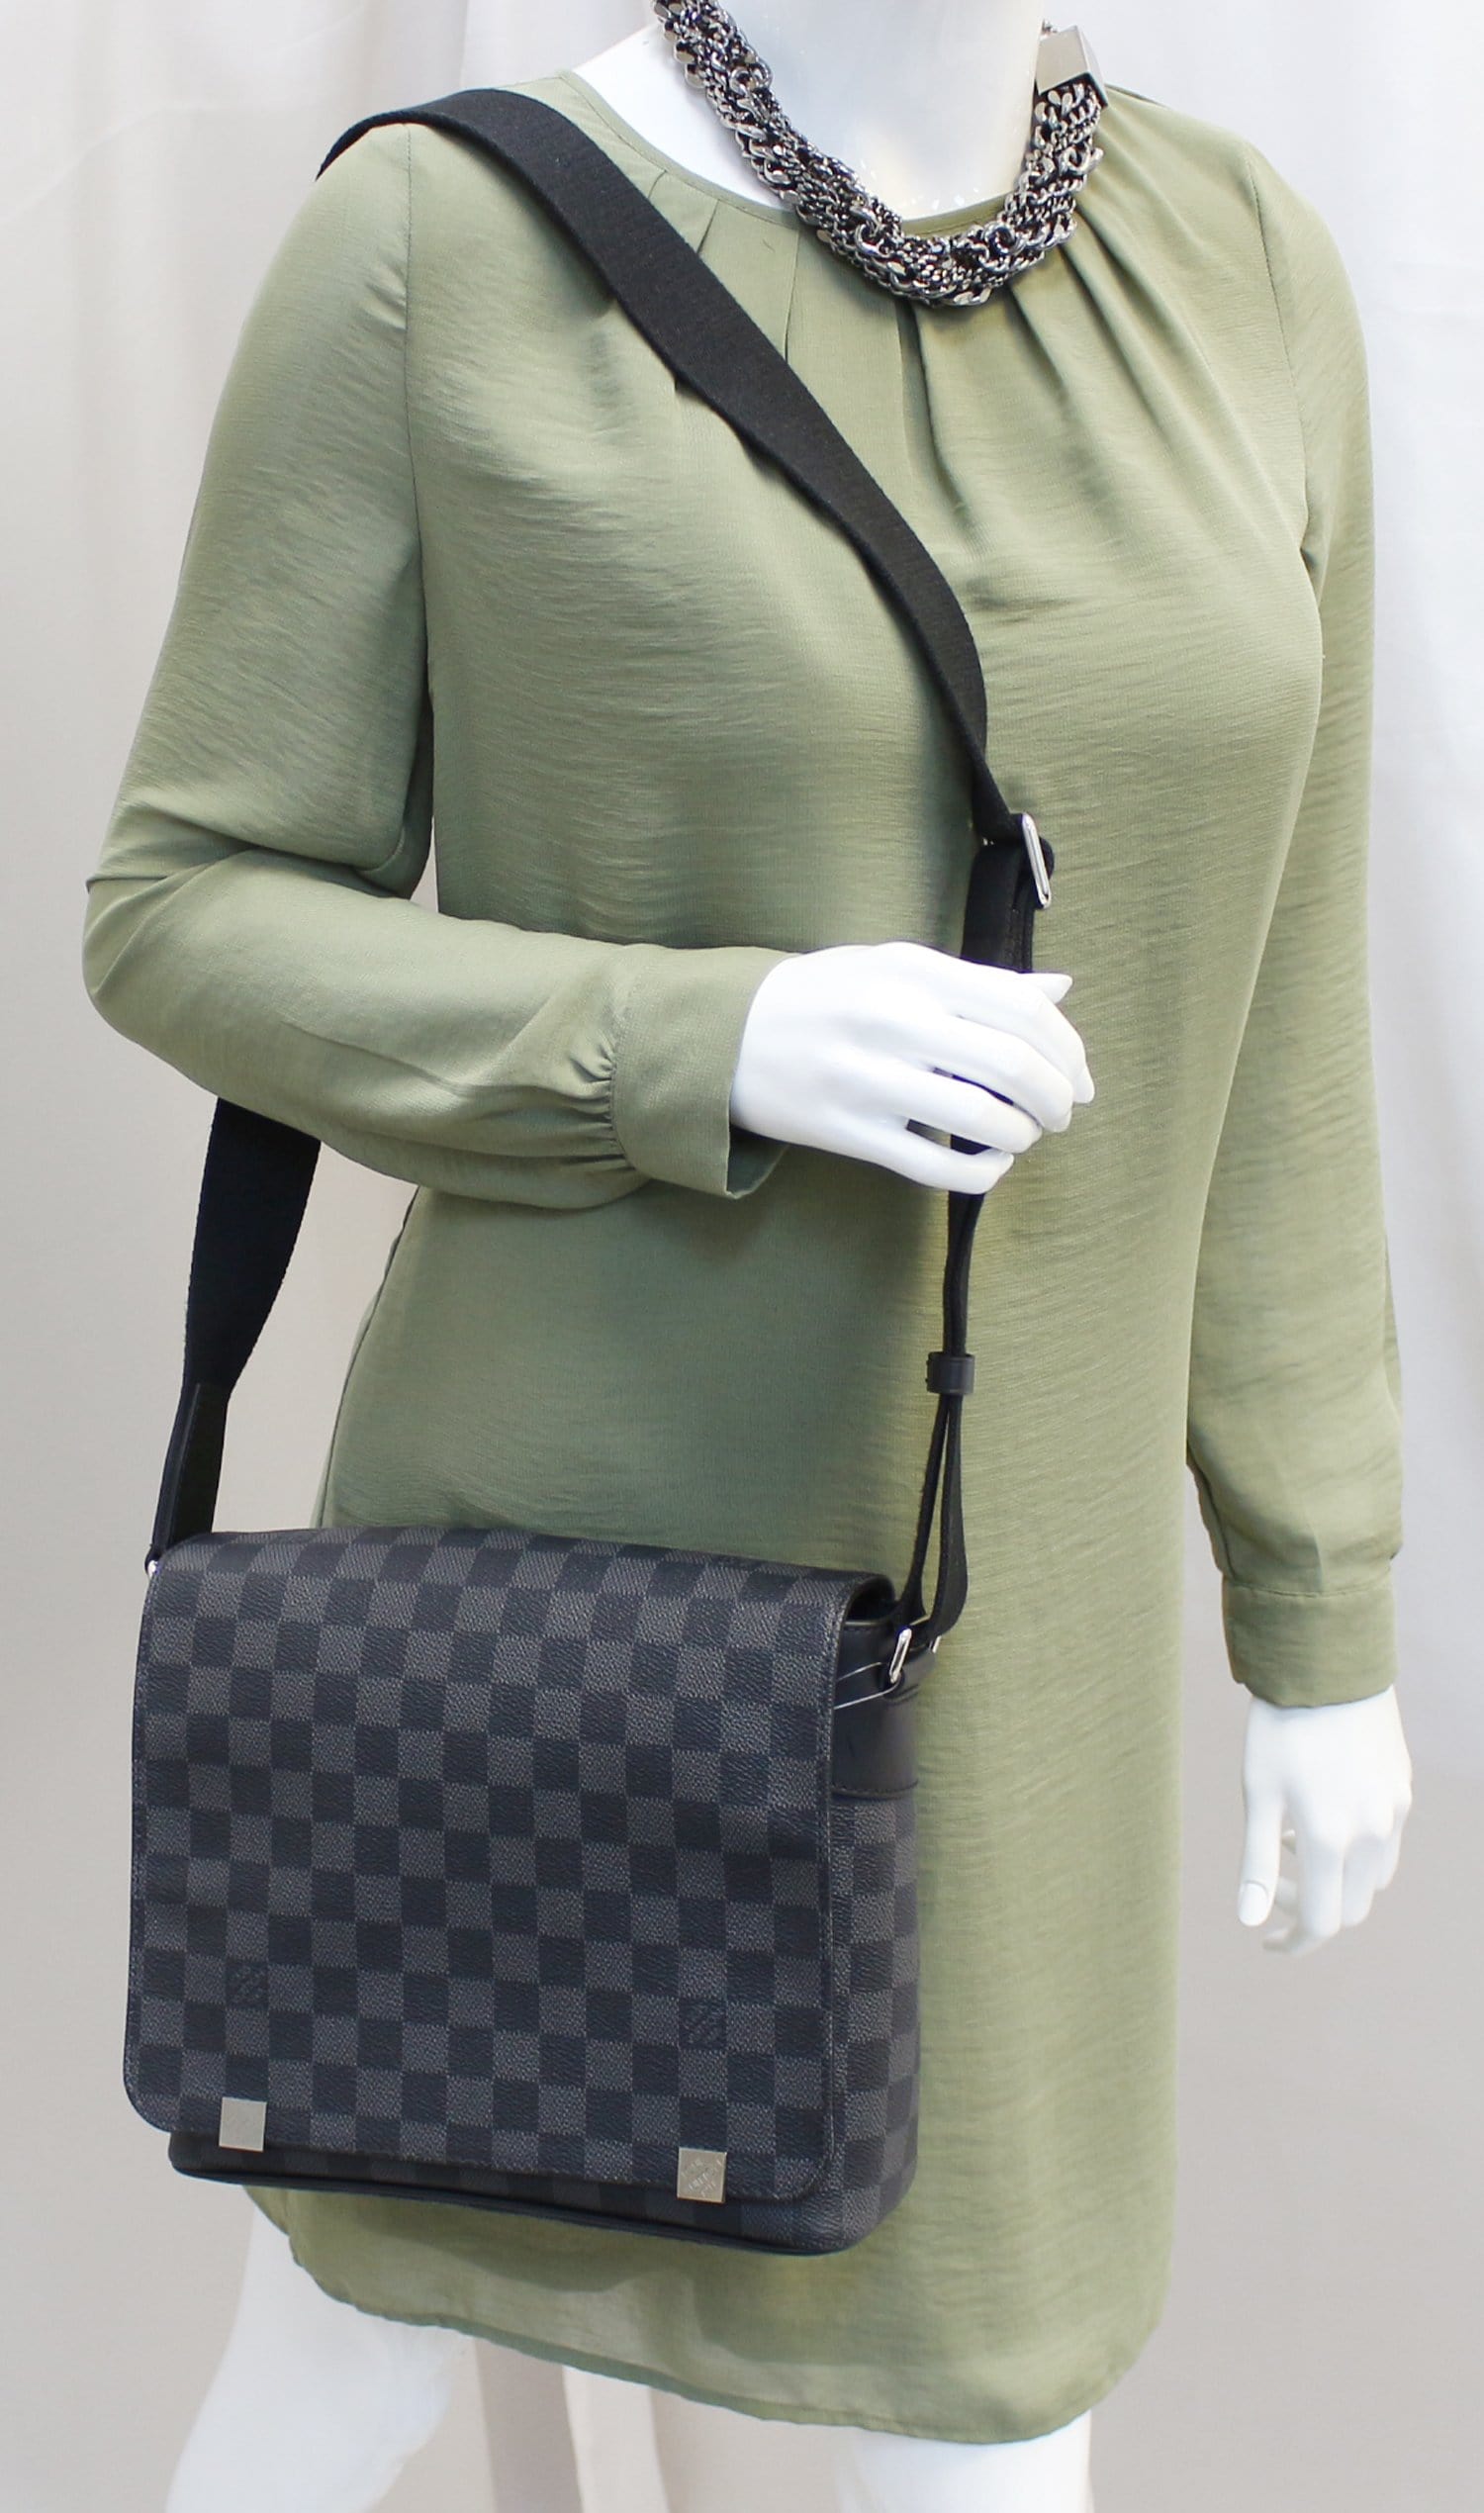 Louis Vuitton Damier Graphite District PM Shoulder Bag